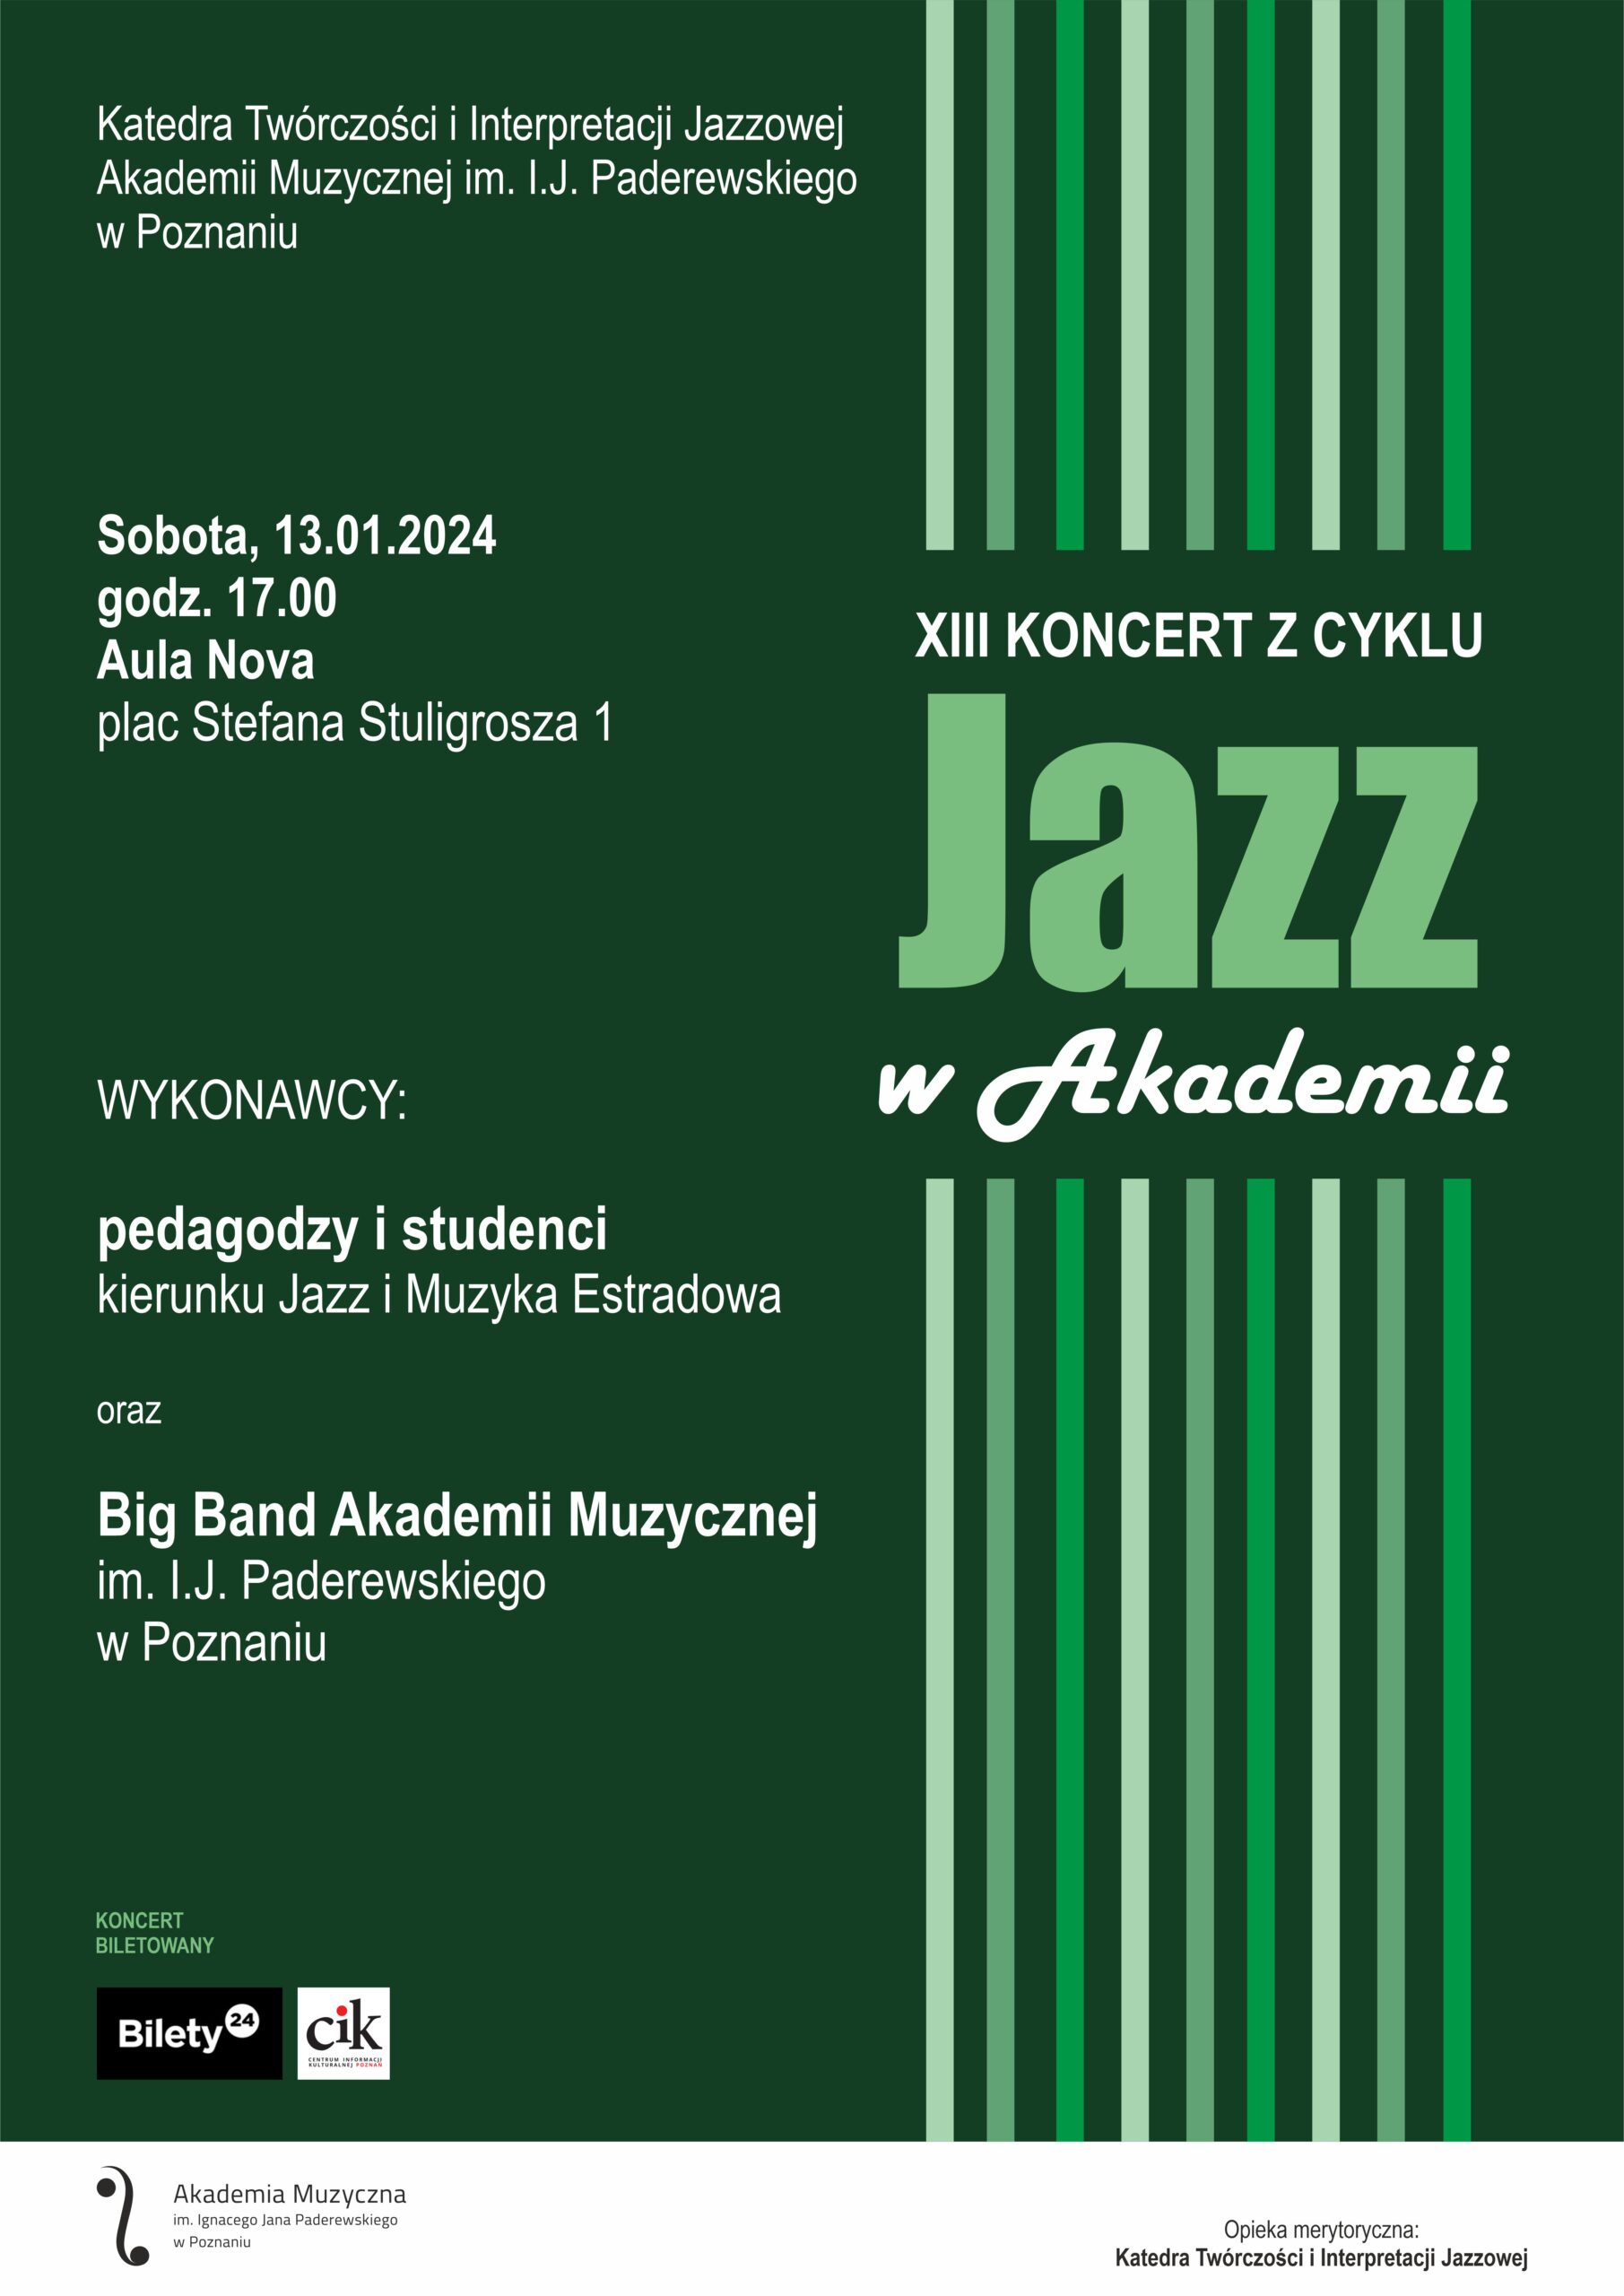 Afisz w kolorze zielonym zawiera informacje na temat koncertu Jazz w Akademii w dniu 13 stycznia 2024